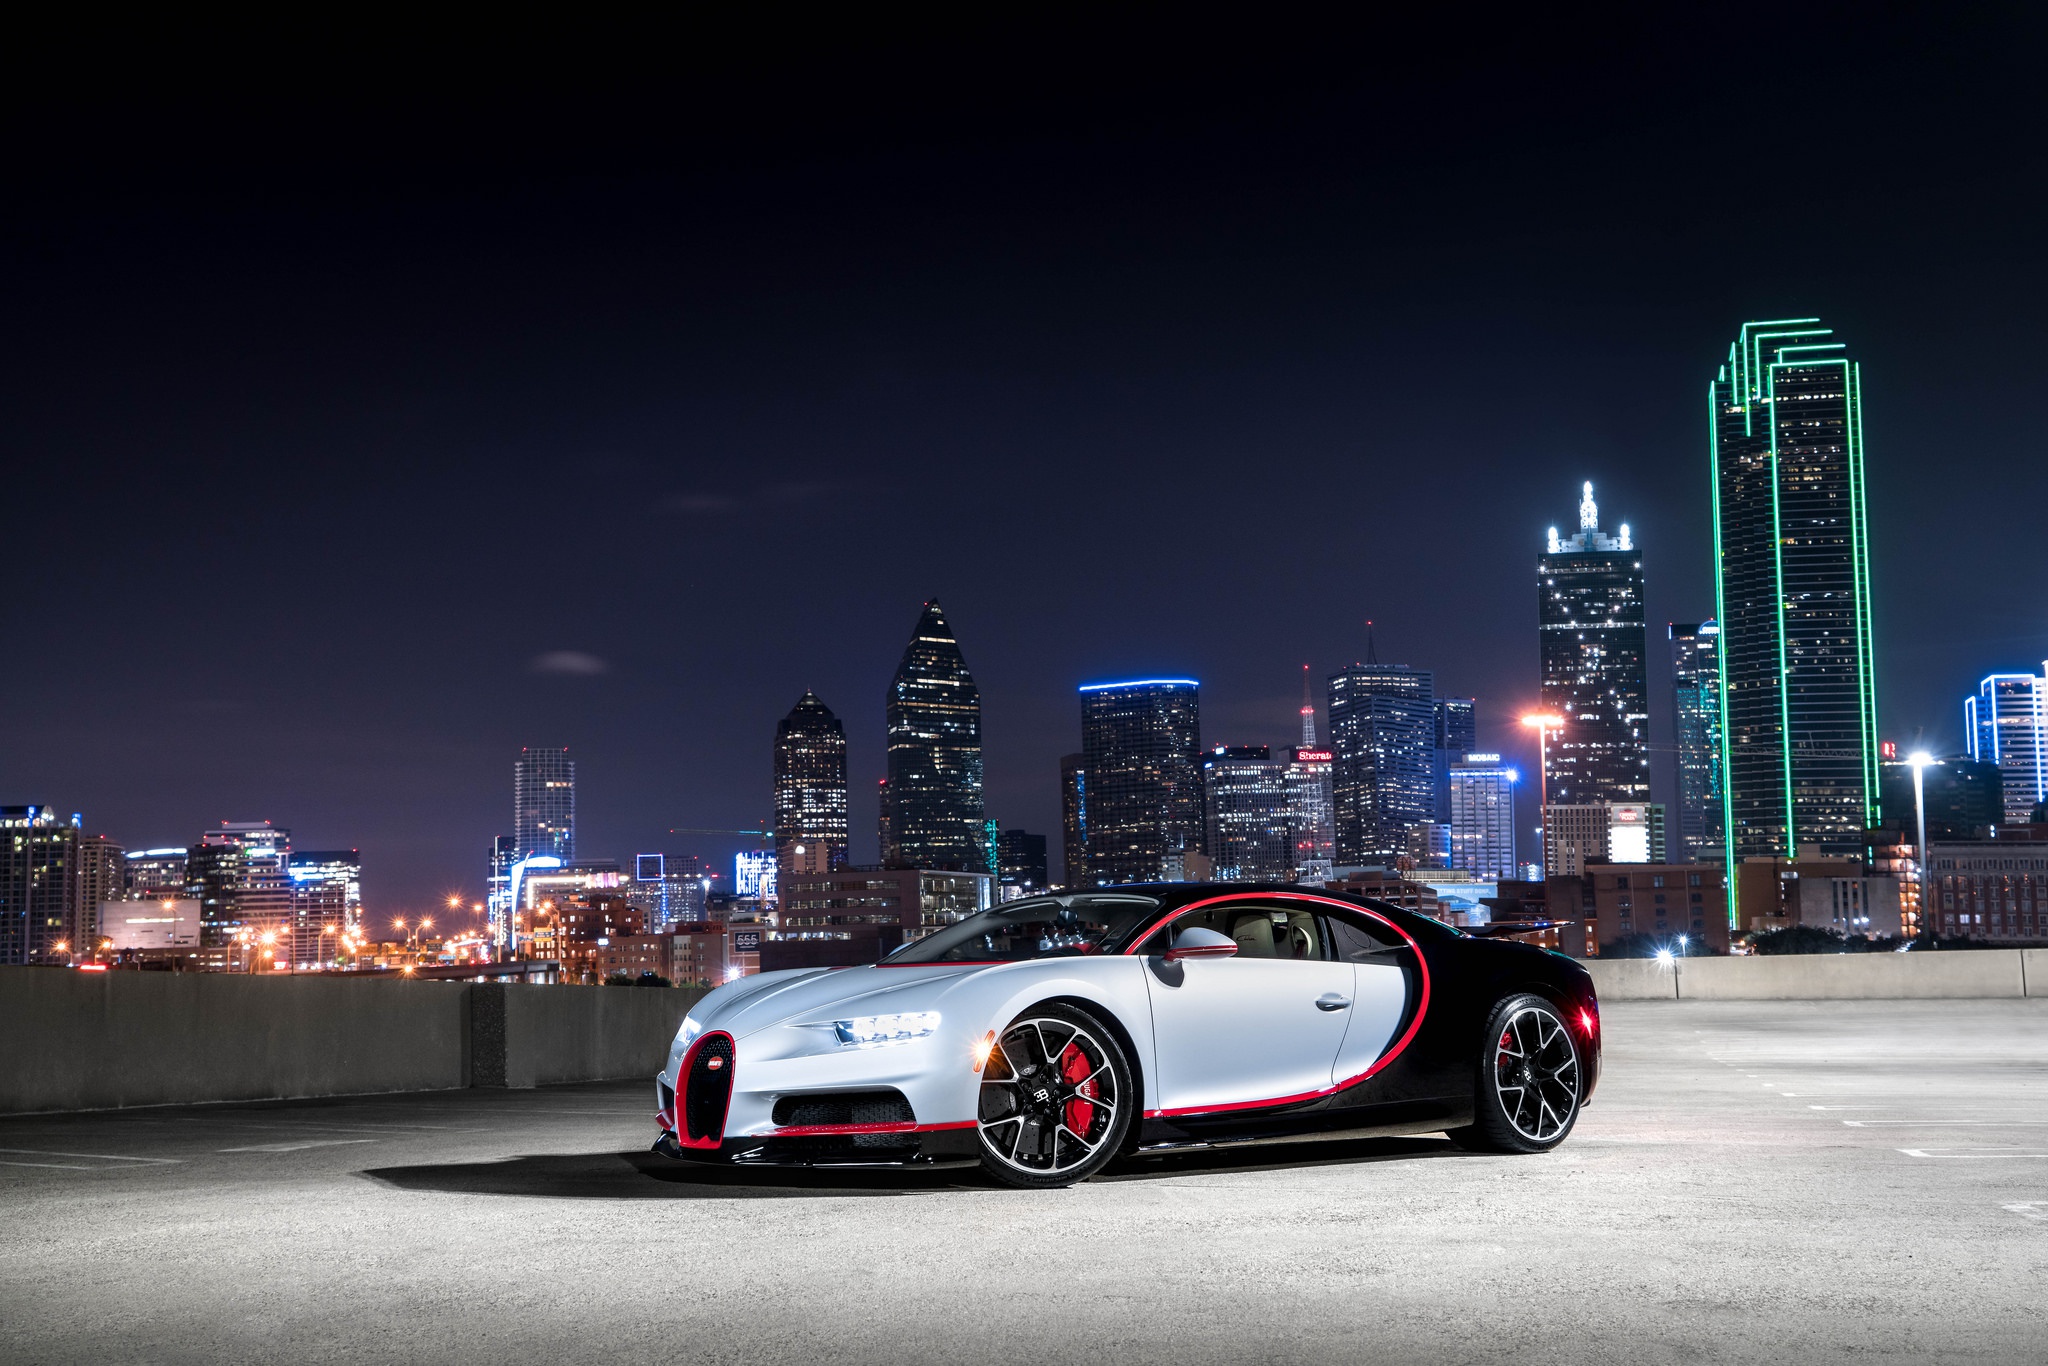 Bugatti Chiron HD Wallpaper | Background Image | 2048x1366 ...